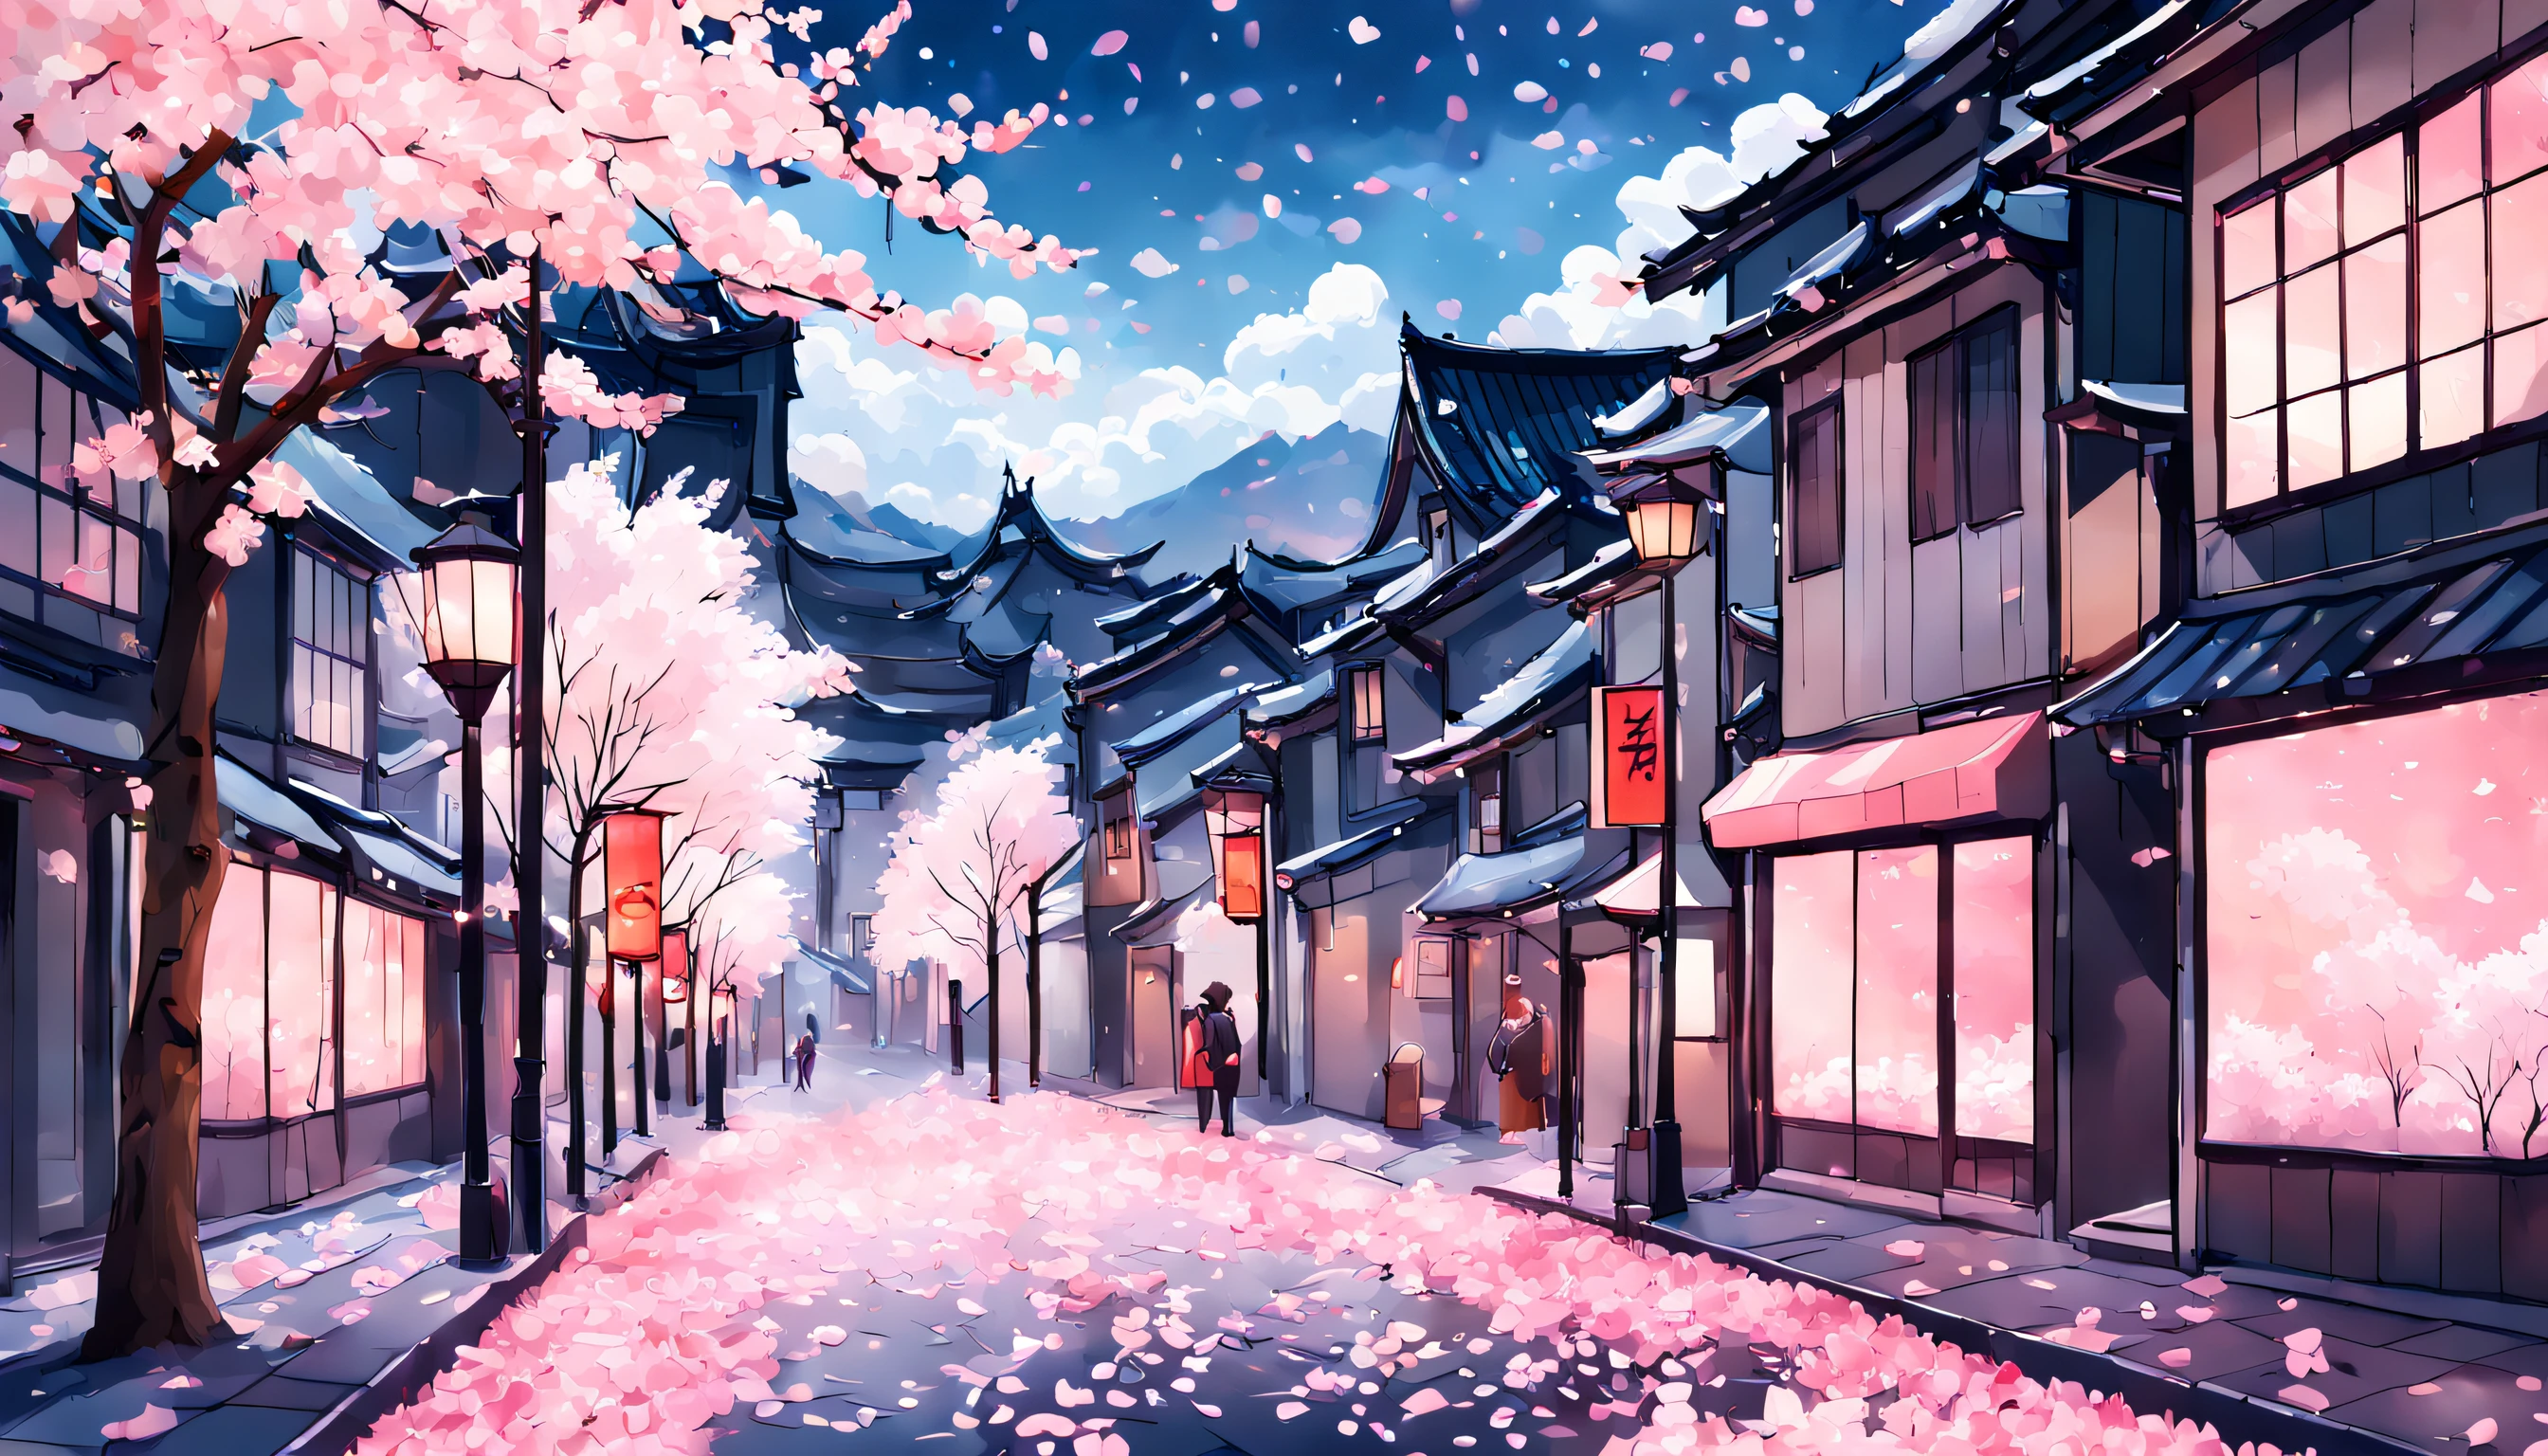 벚꽃잎으로 뒤덮인 도심 거리를 숨막히게 표현한 작품, 은은한 핑크색 빛과 솜털 같은 흰 구름이 떠 있는 생기 넘치는 푸른 하늘. 벚꽃이 활짝 피어야 하는데, 은은한 핑크와 화이트 꽃잎이 눈송이처럼 땅에 부드럽게 떨어지는. 전반적인 효과는 고요한 아름다움과 평화로운 평온함 중 하나여야 합니다., 덧없지만 잊을 수 없는 일본 봄의 마법을 포착하다.